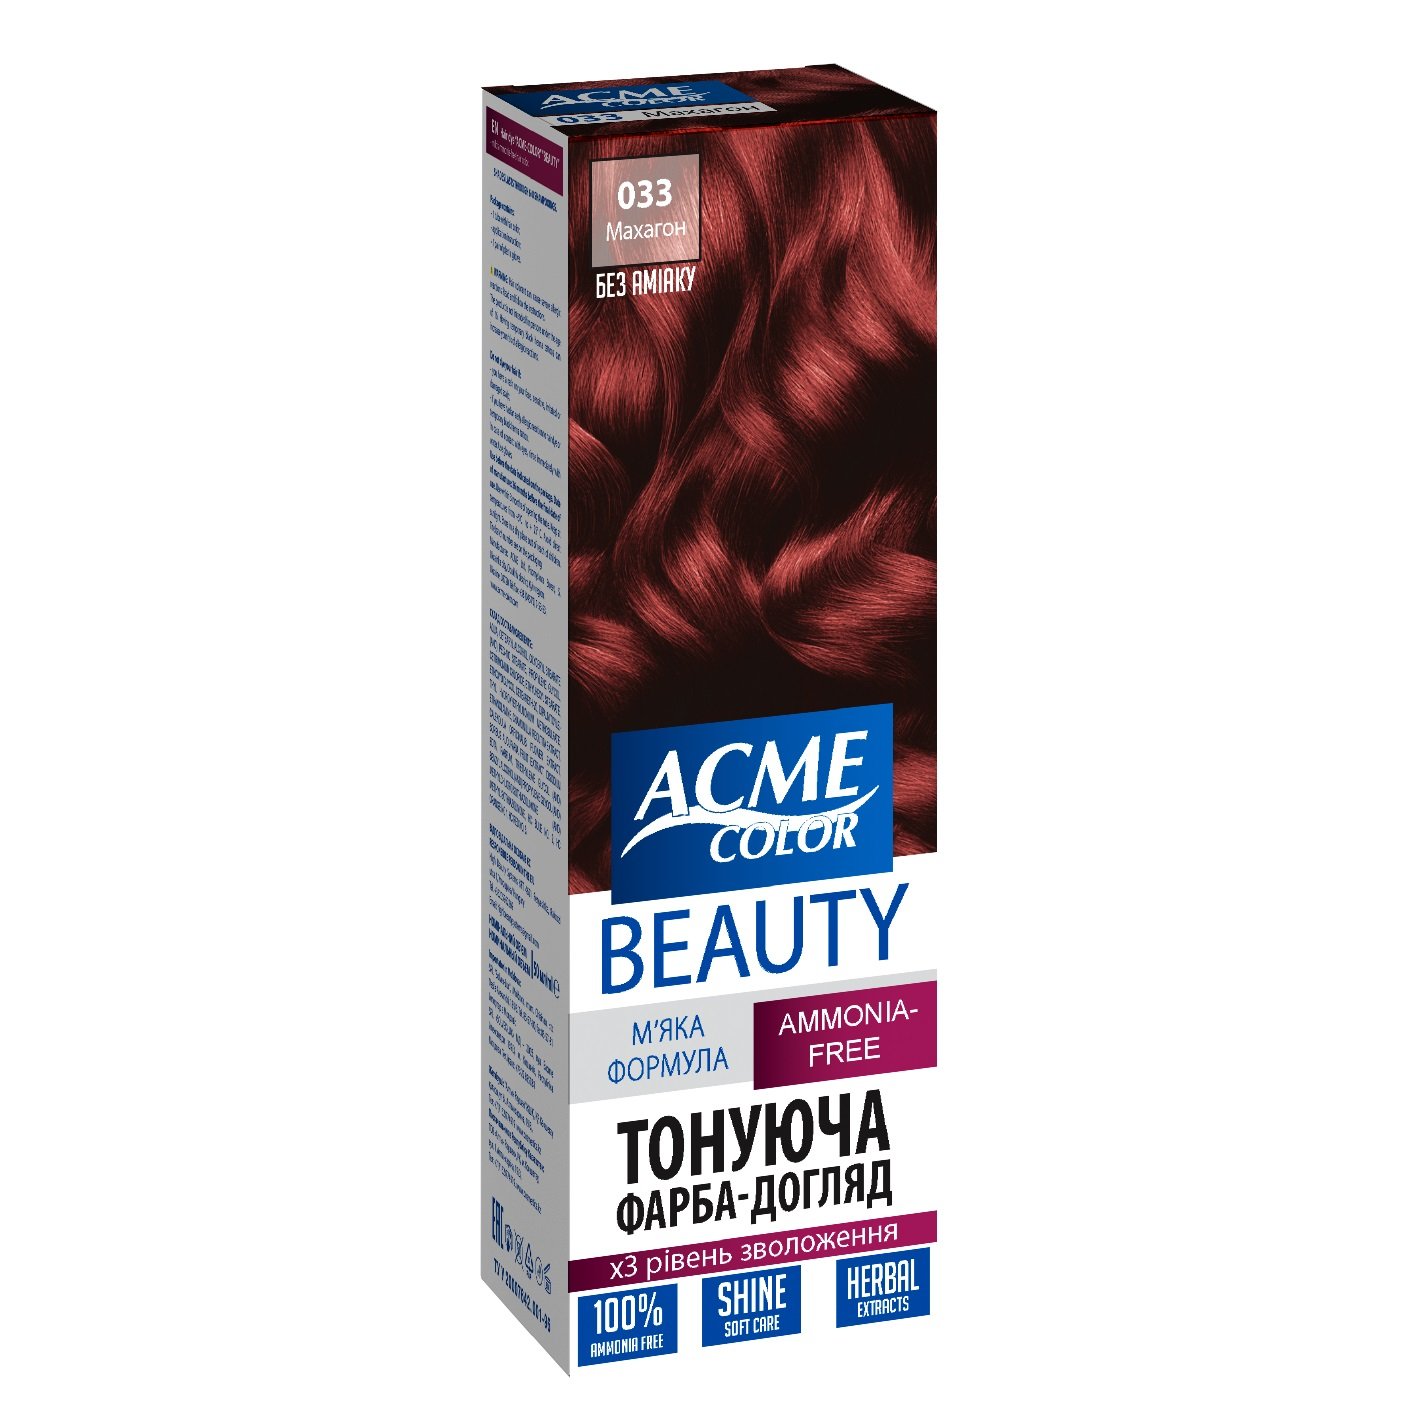 Гель-фарба для волосся Acme-color Beauty, відтінок 033 (Махагон), 69 г - фото 1